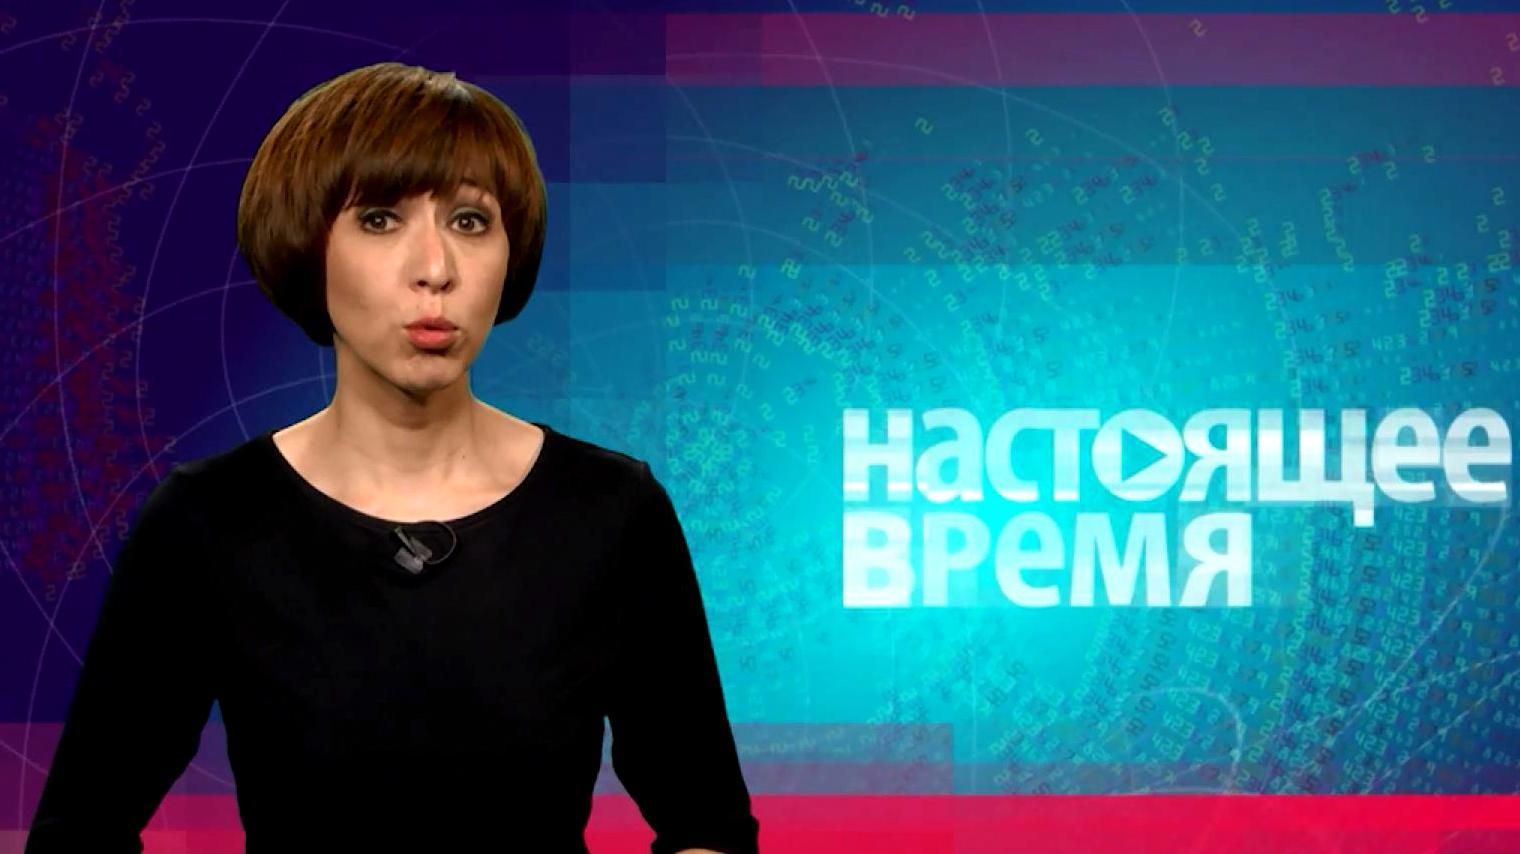 "Настоящее время". Россия снимает вопрос Донбасса, украинцы готовят Путину встречу